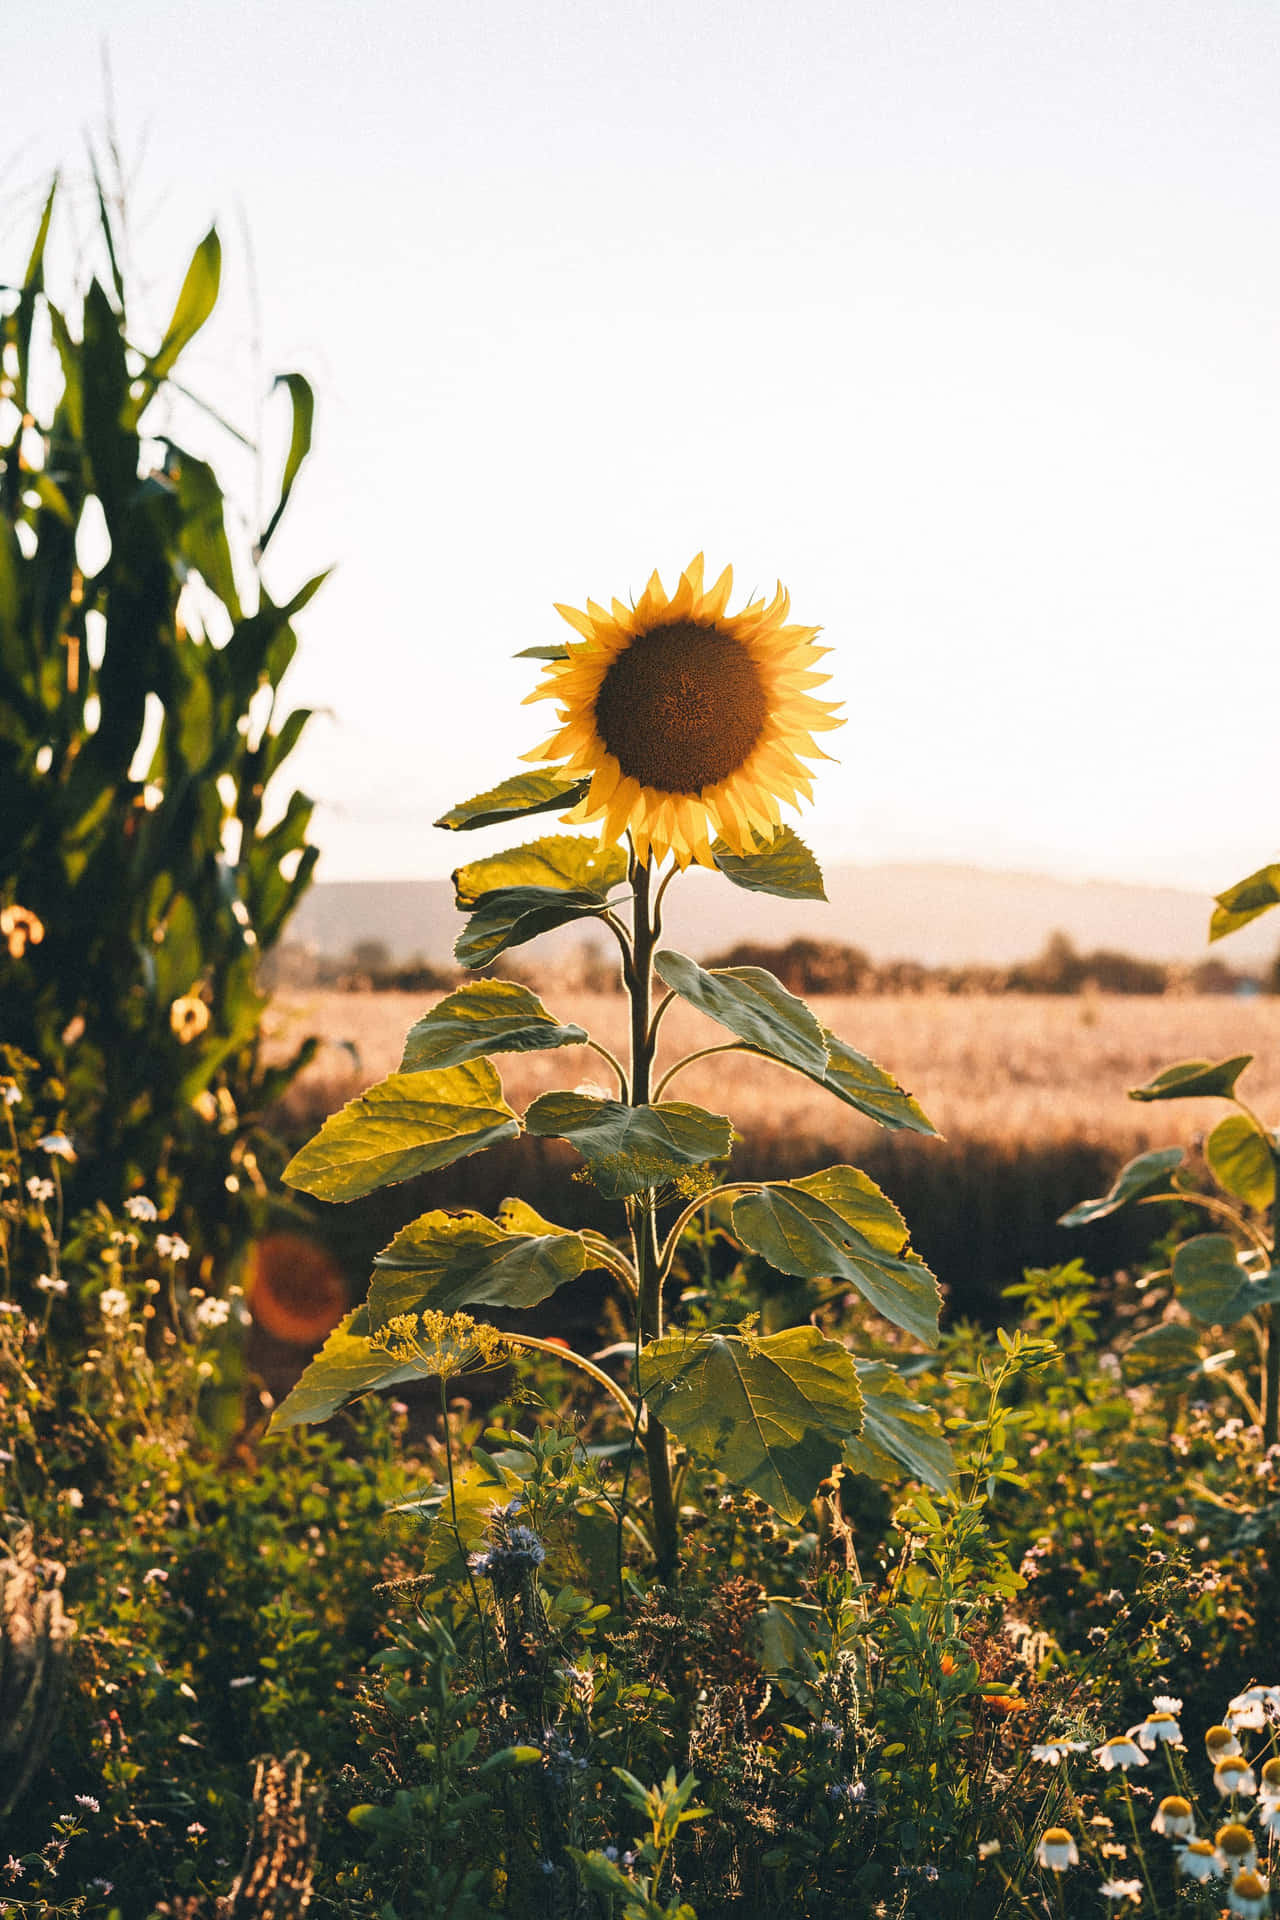 Schönheitund Natur Vereinen Sich In Diesem Atemberaubenden Sonnenblumen-ästhetik Iphone-hintergrundbild. Wallpaper